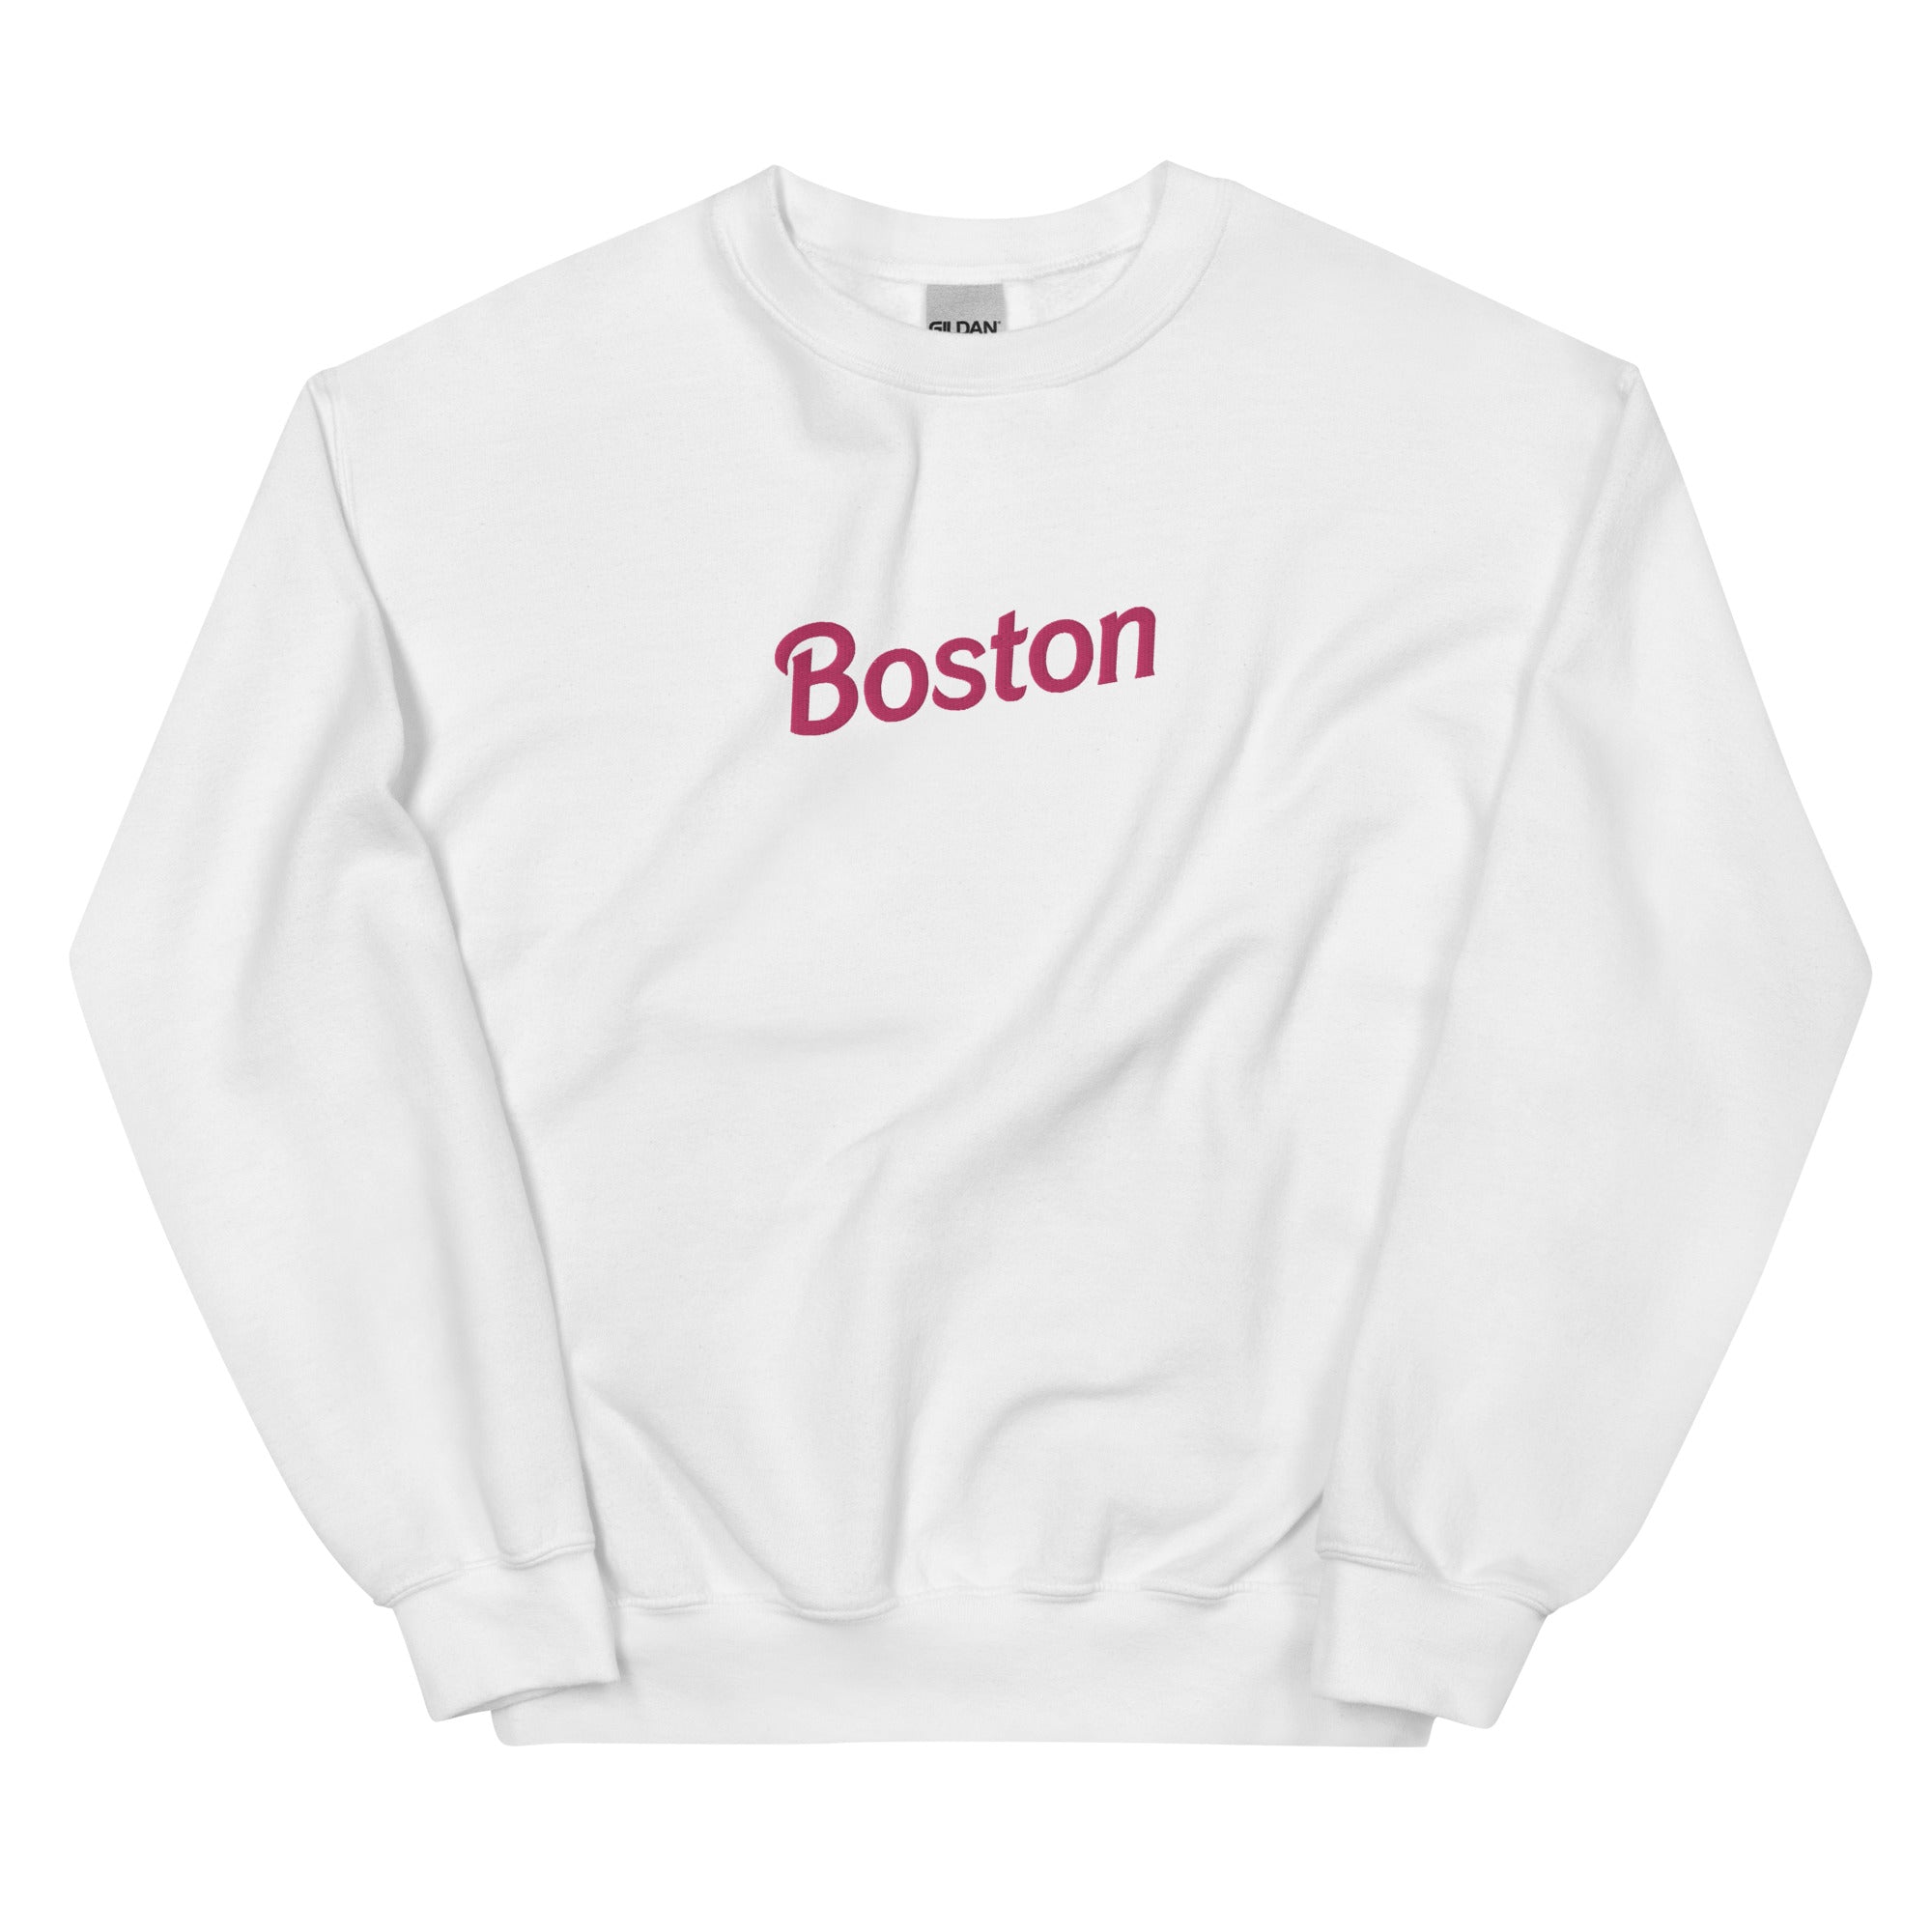 Pink Boston Embroidered Crewneck – boston.com/store